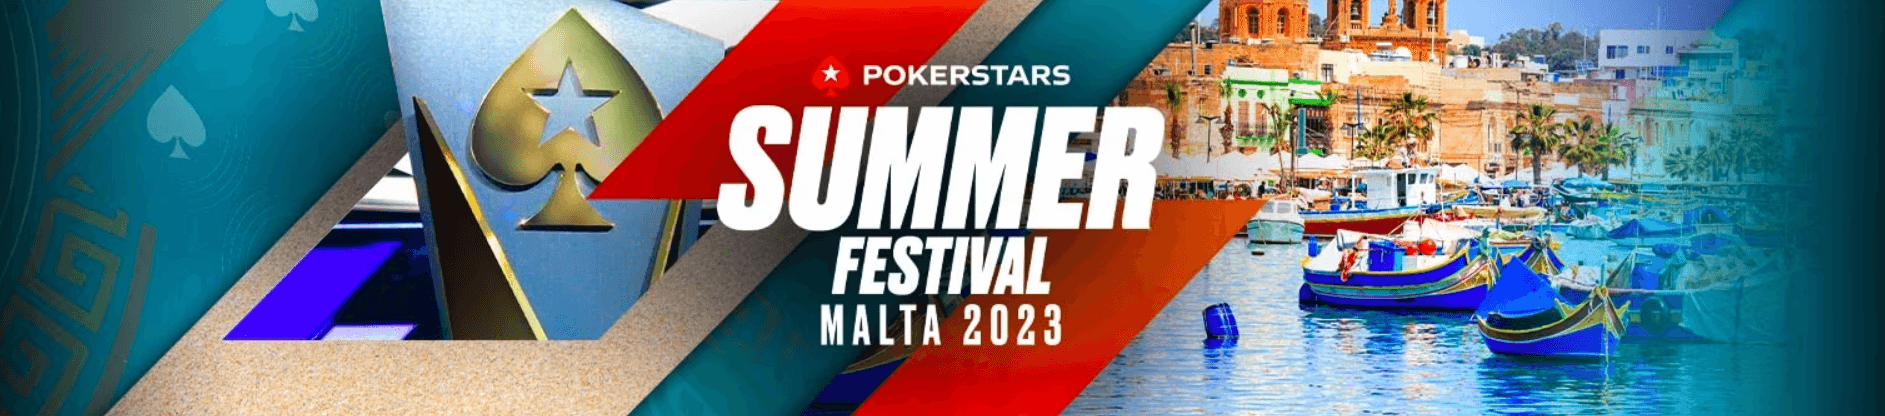 Malta va găzdui PokerStars Summer Festival 2023